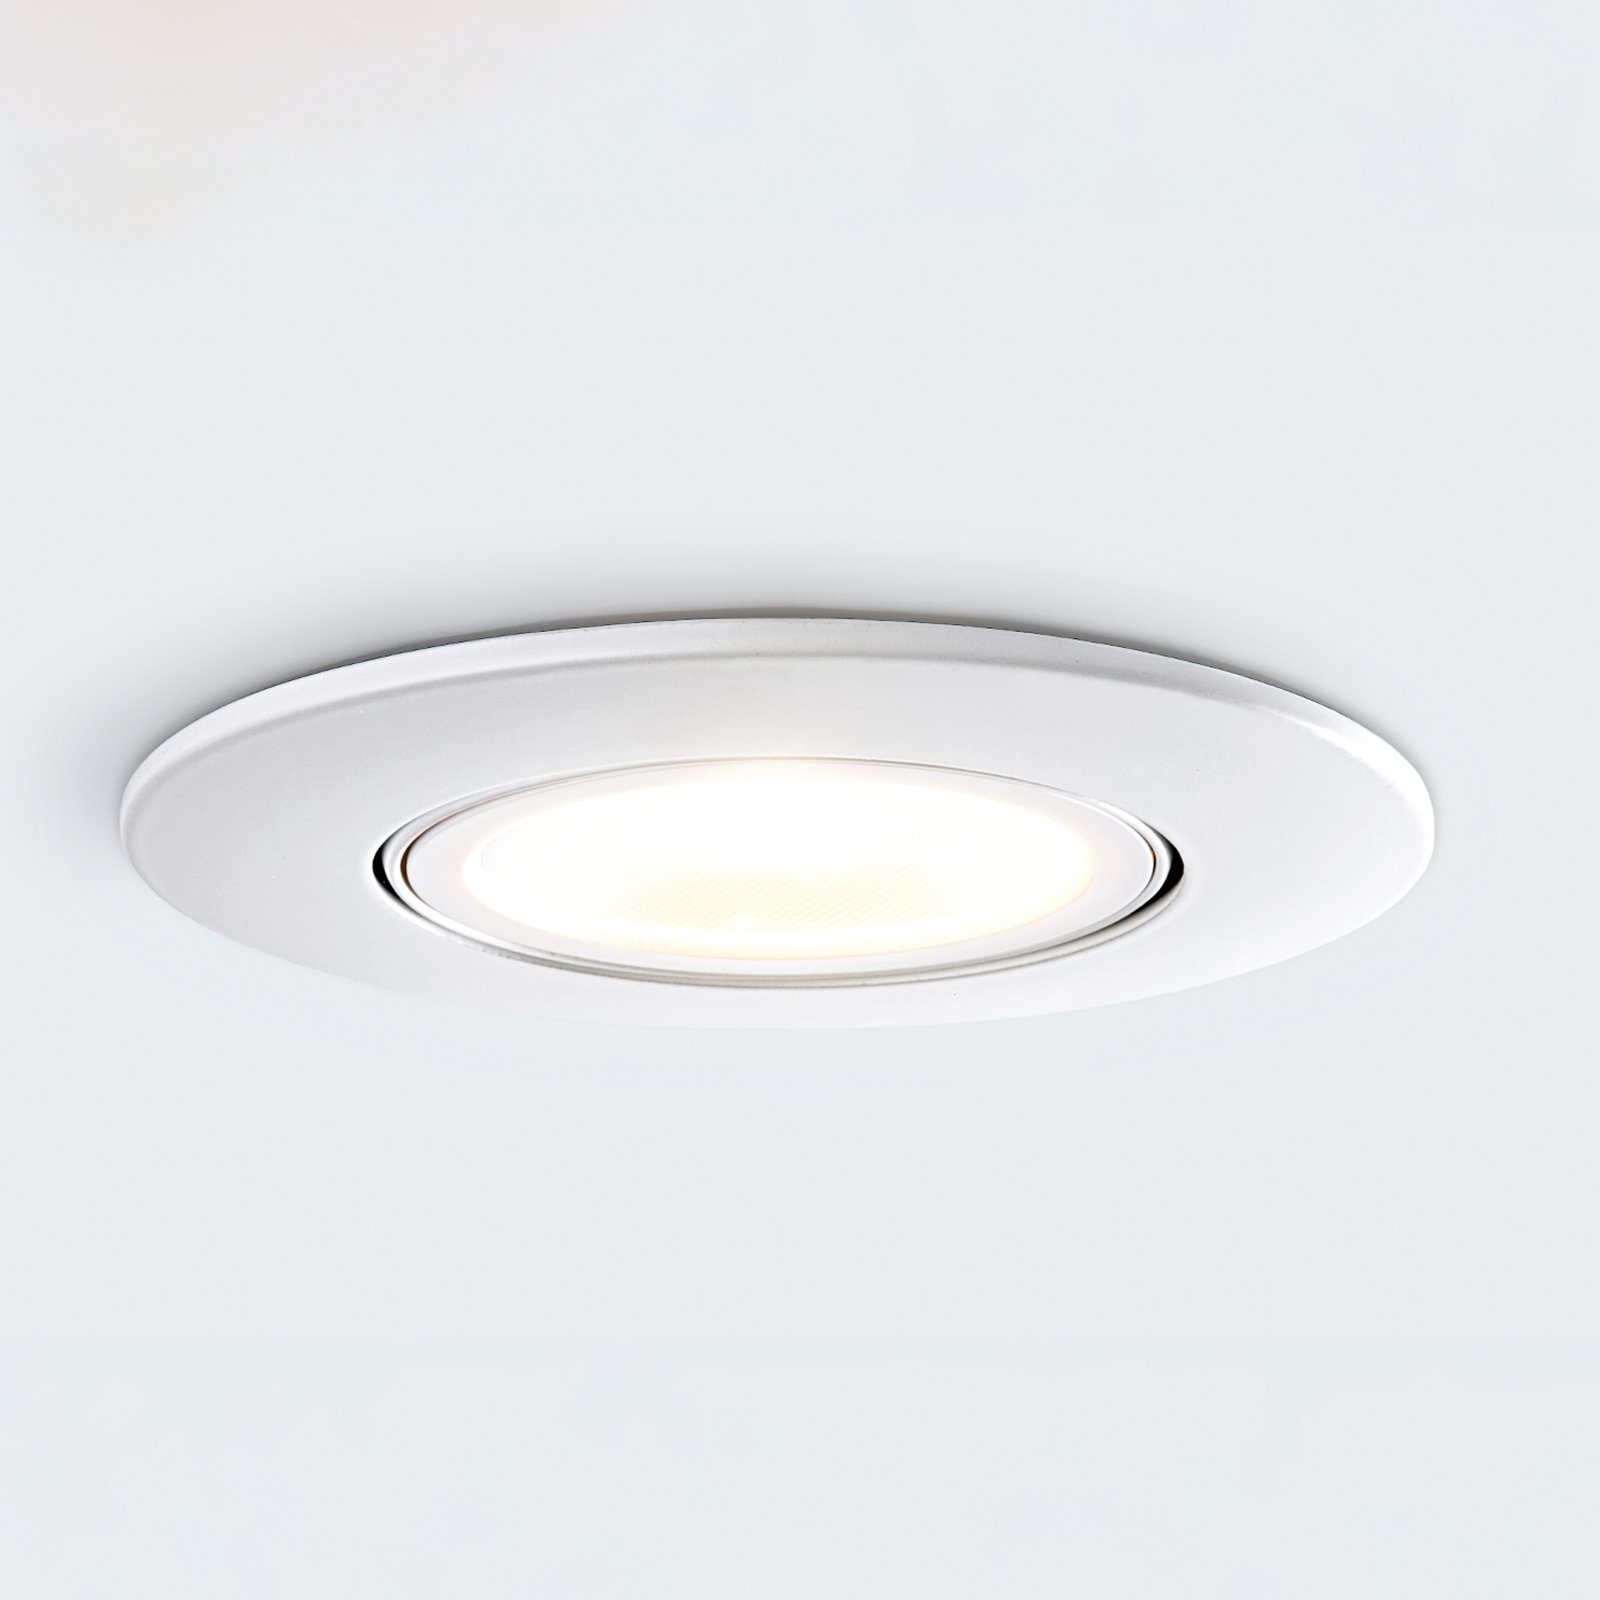 Foco empotrado LED DL8002, orientable, 38°